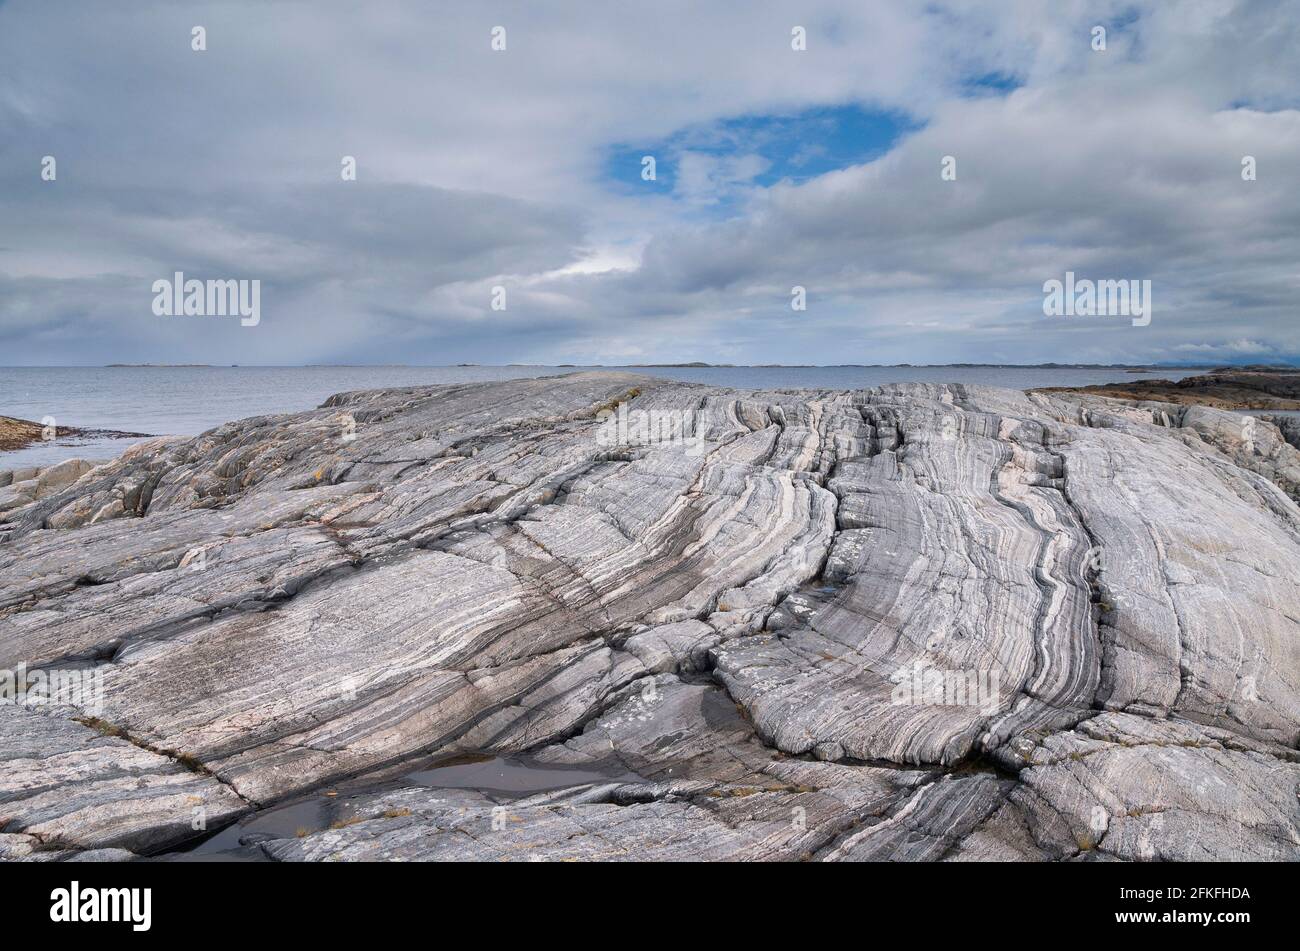 Costa rocosa cerca de la aldea noruega Vevang Foto de stock